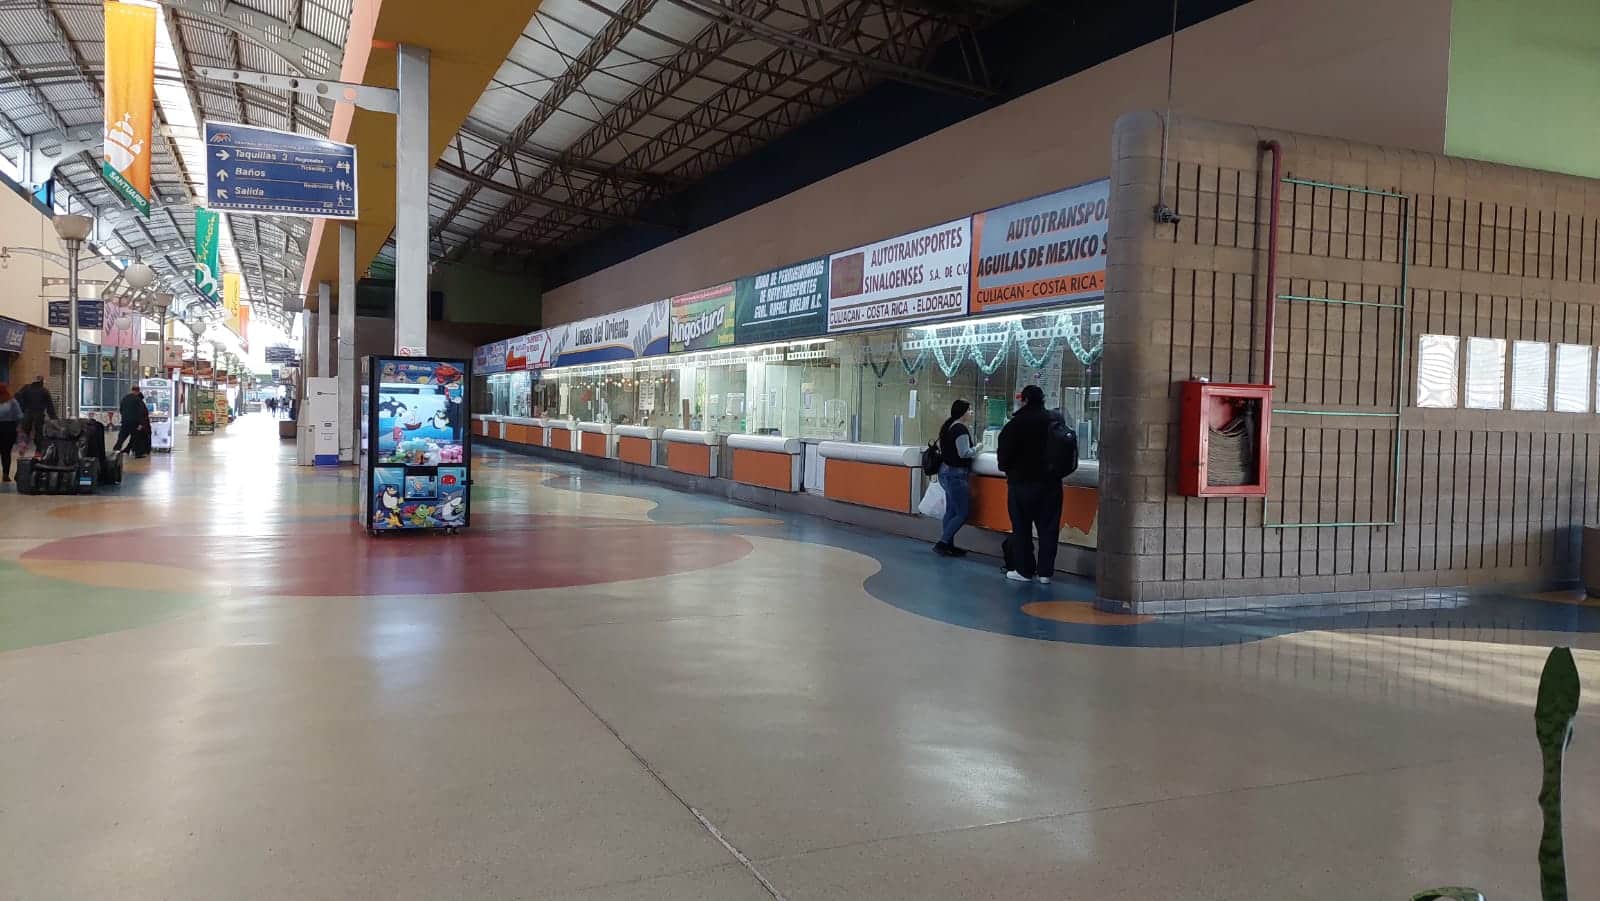 El miedo a viajar sigue; con poco pasaje la Central de Autobuses de  Culiacán reactiva operaciones | Línea Directa